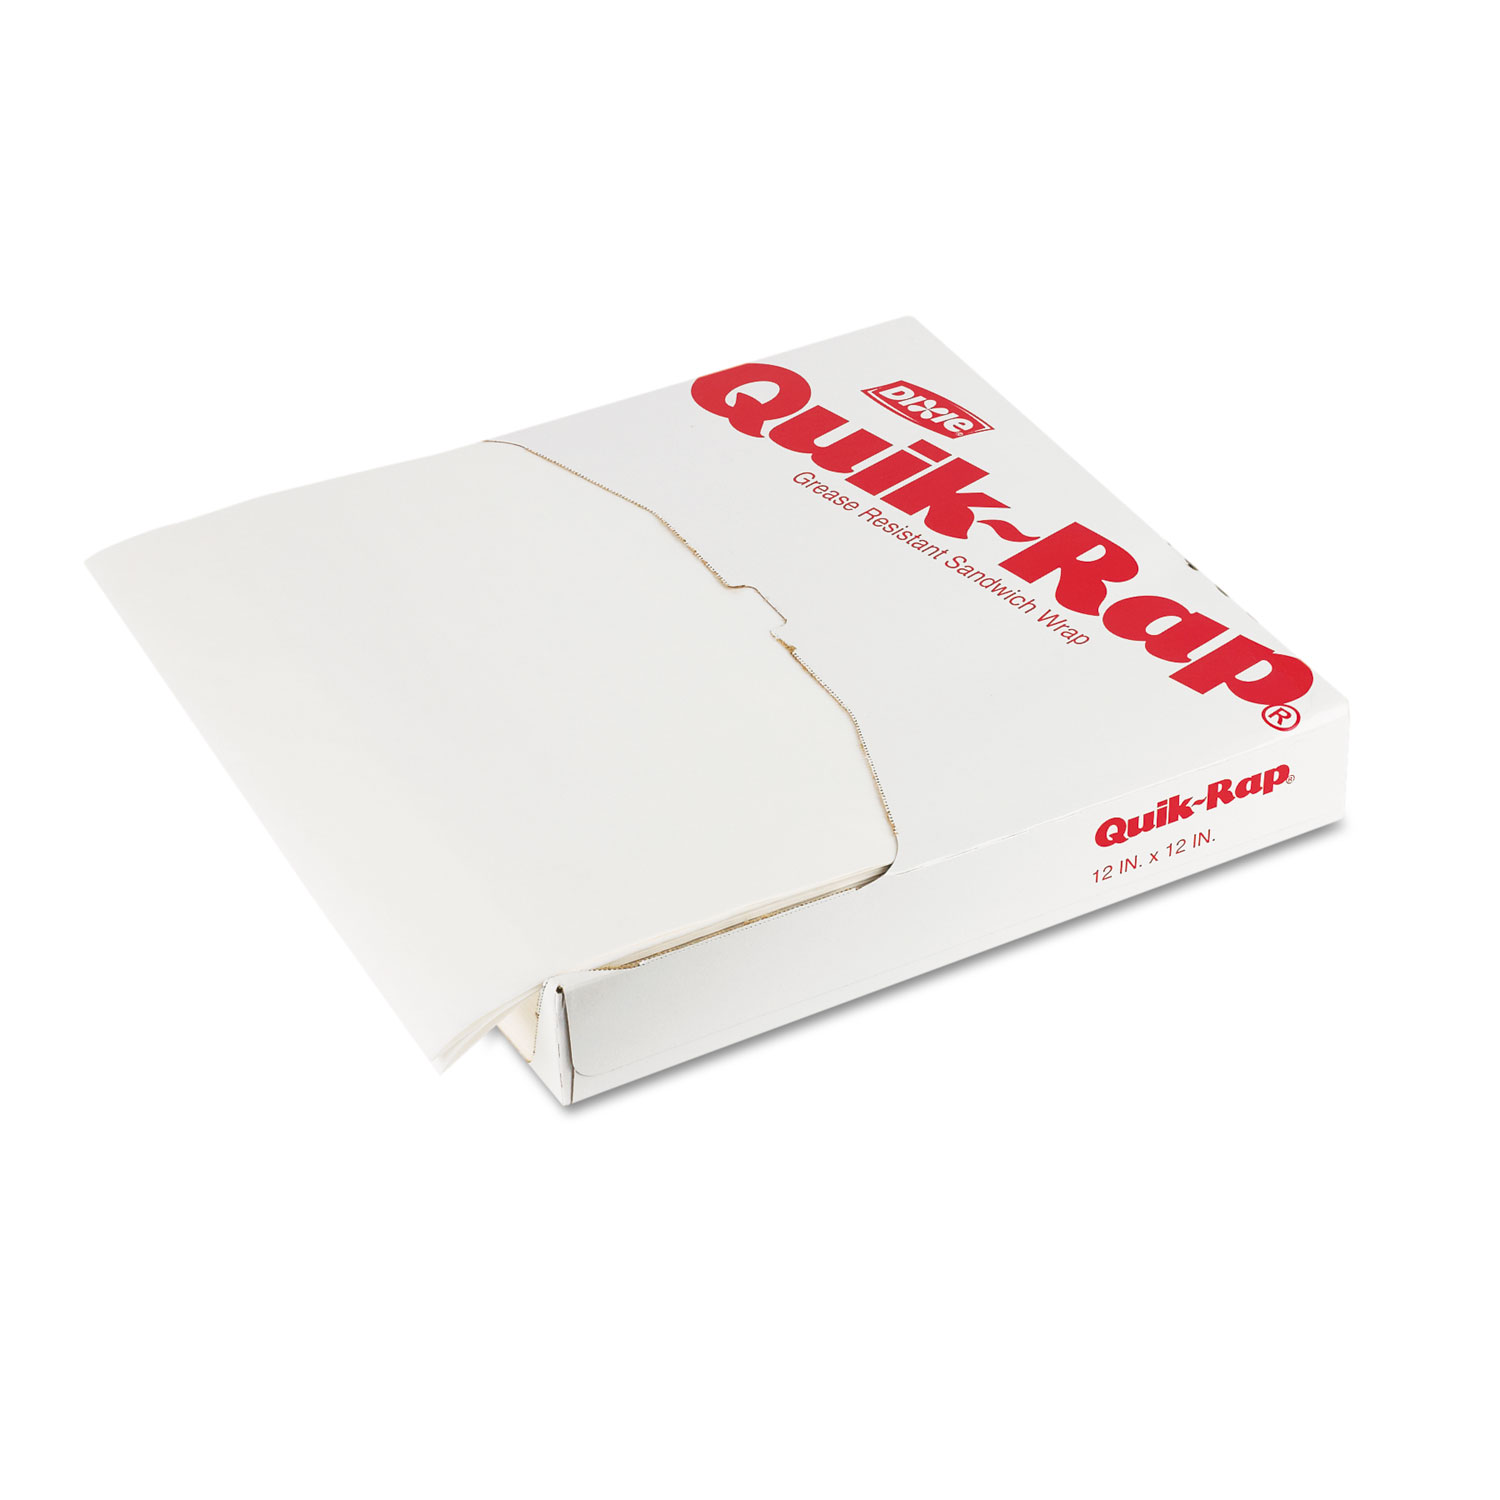  Dixie DIX 891254 Quik-Rap Grease-Resistant Waxed Sandwich Paper, 14 x 14, Opaque White,1000/Pack (DXE891254) 